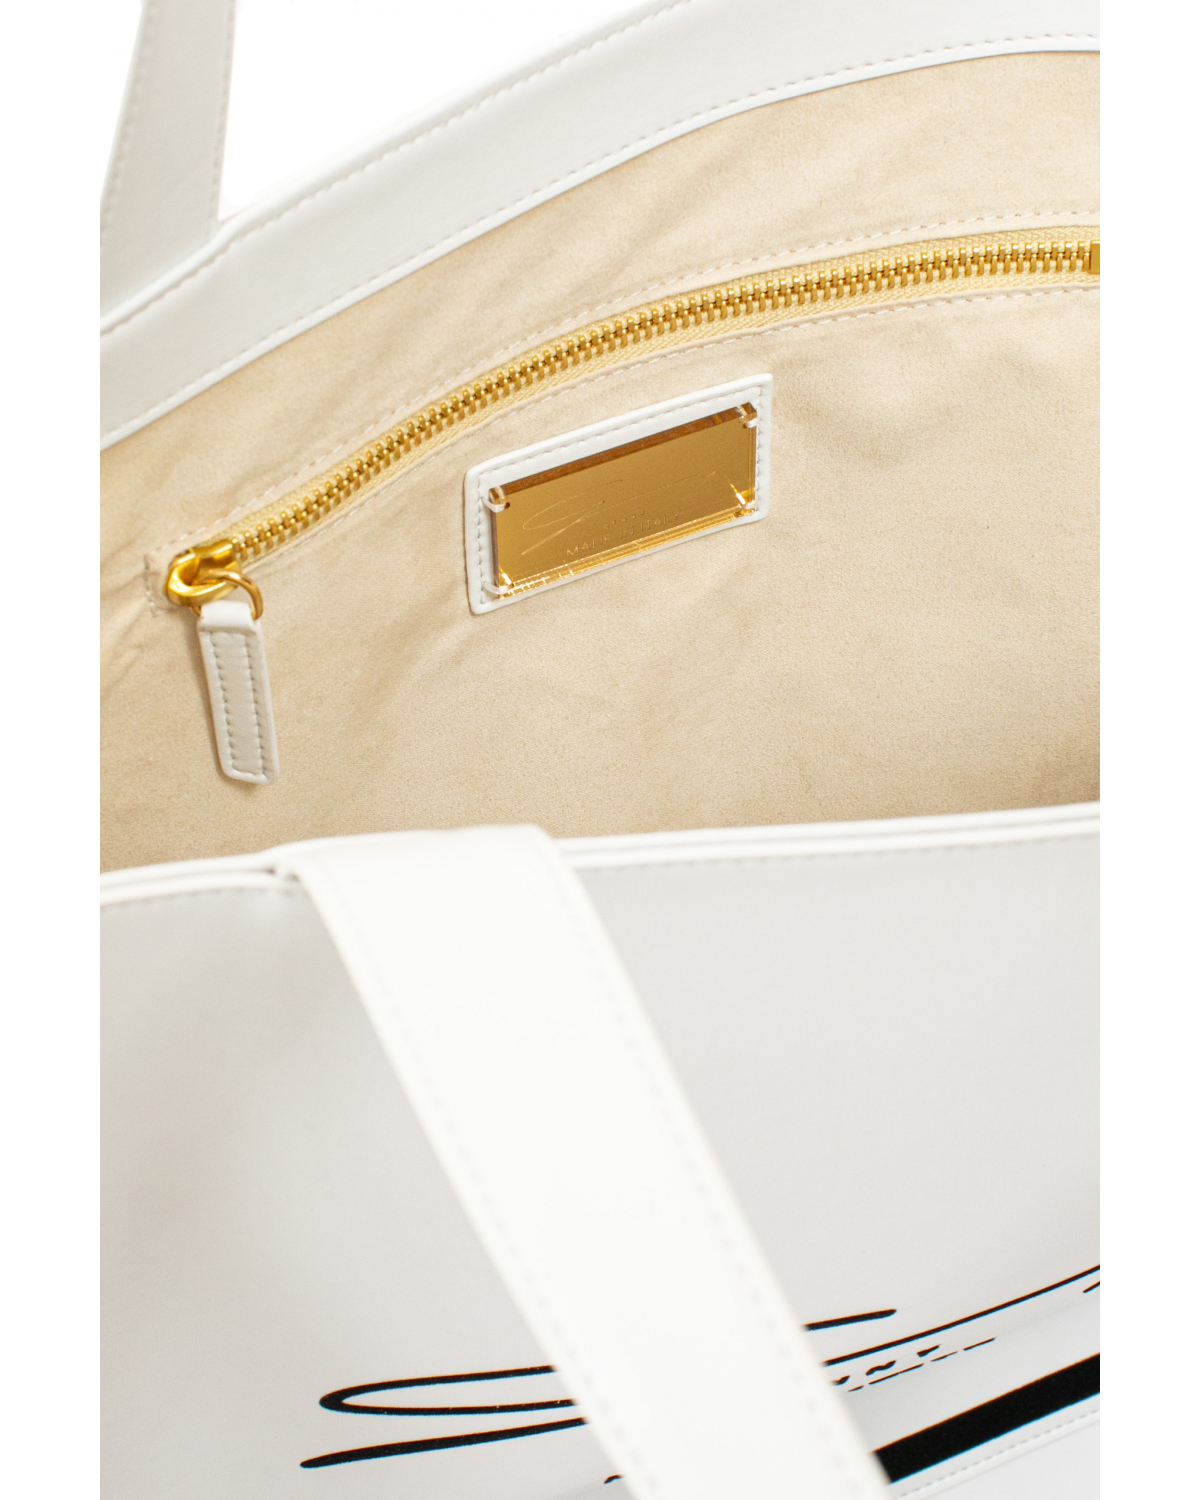 White Appleskin shopper bag | Bags, 73_74 | Genny